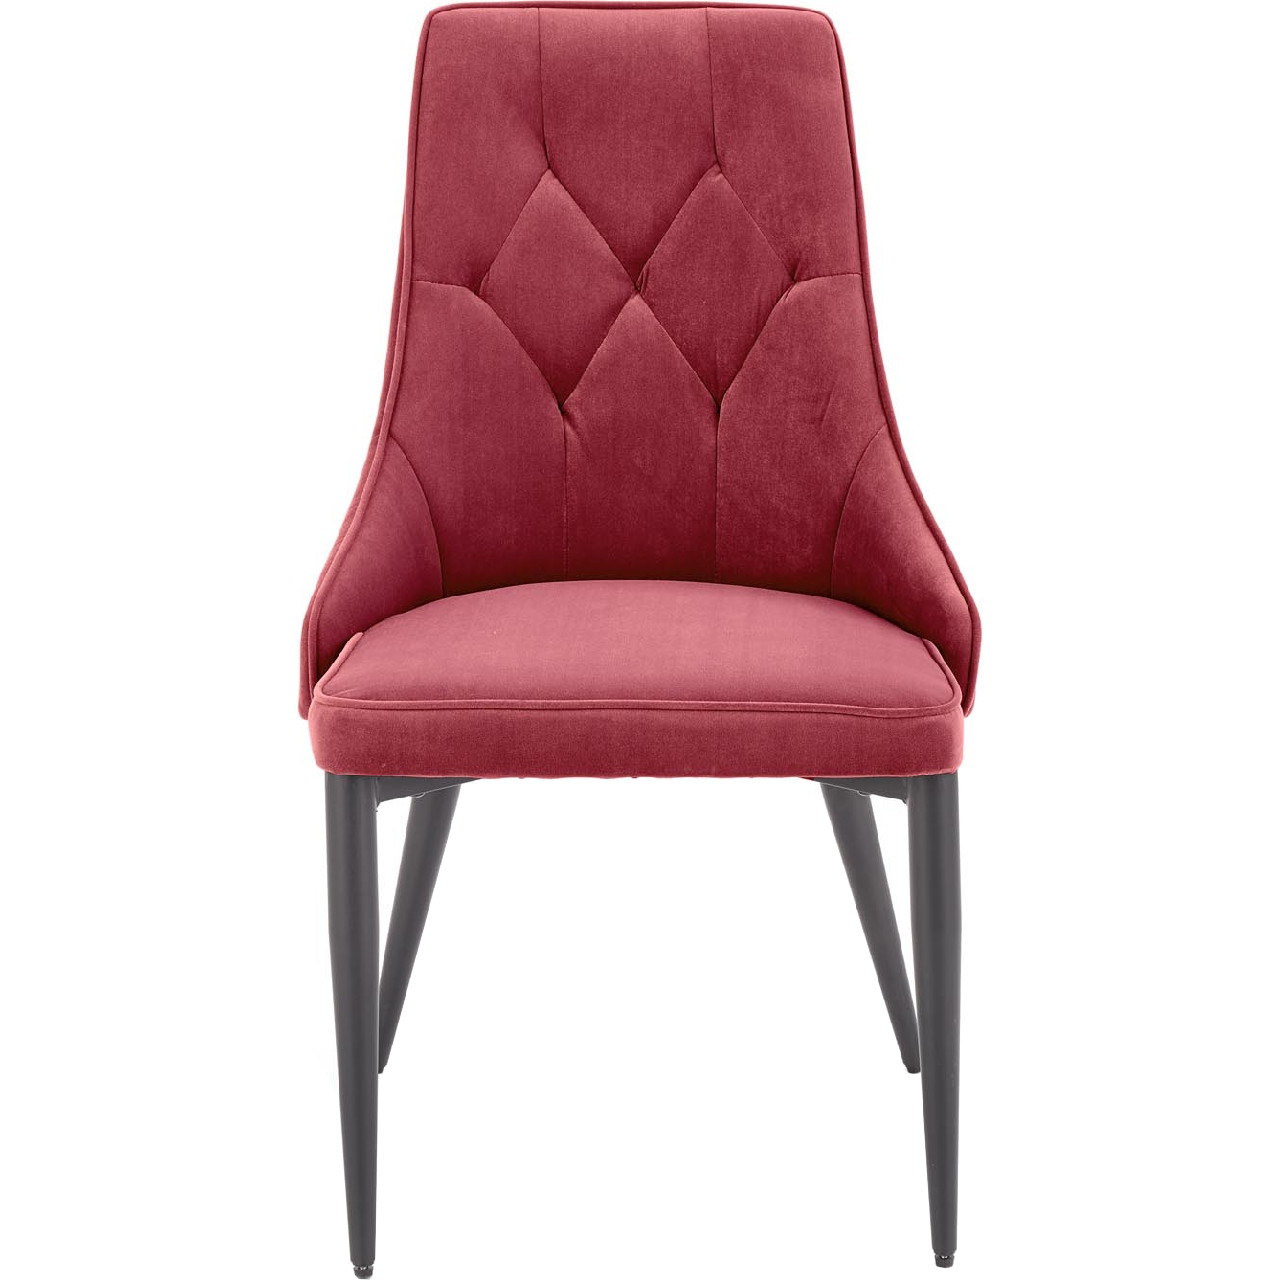 Chair K365 dark red